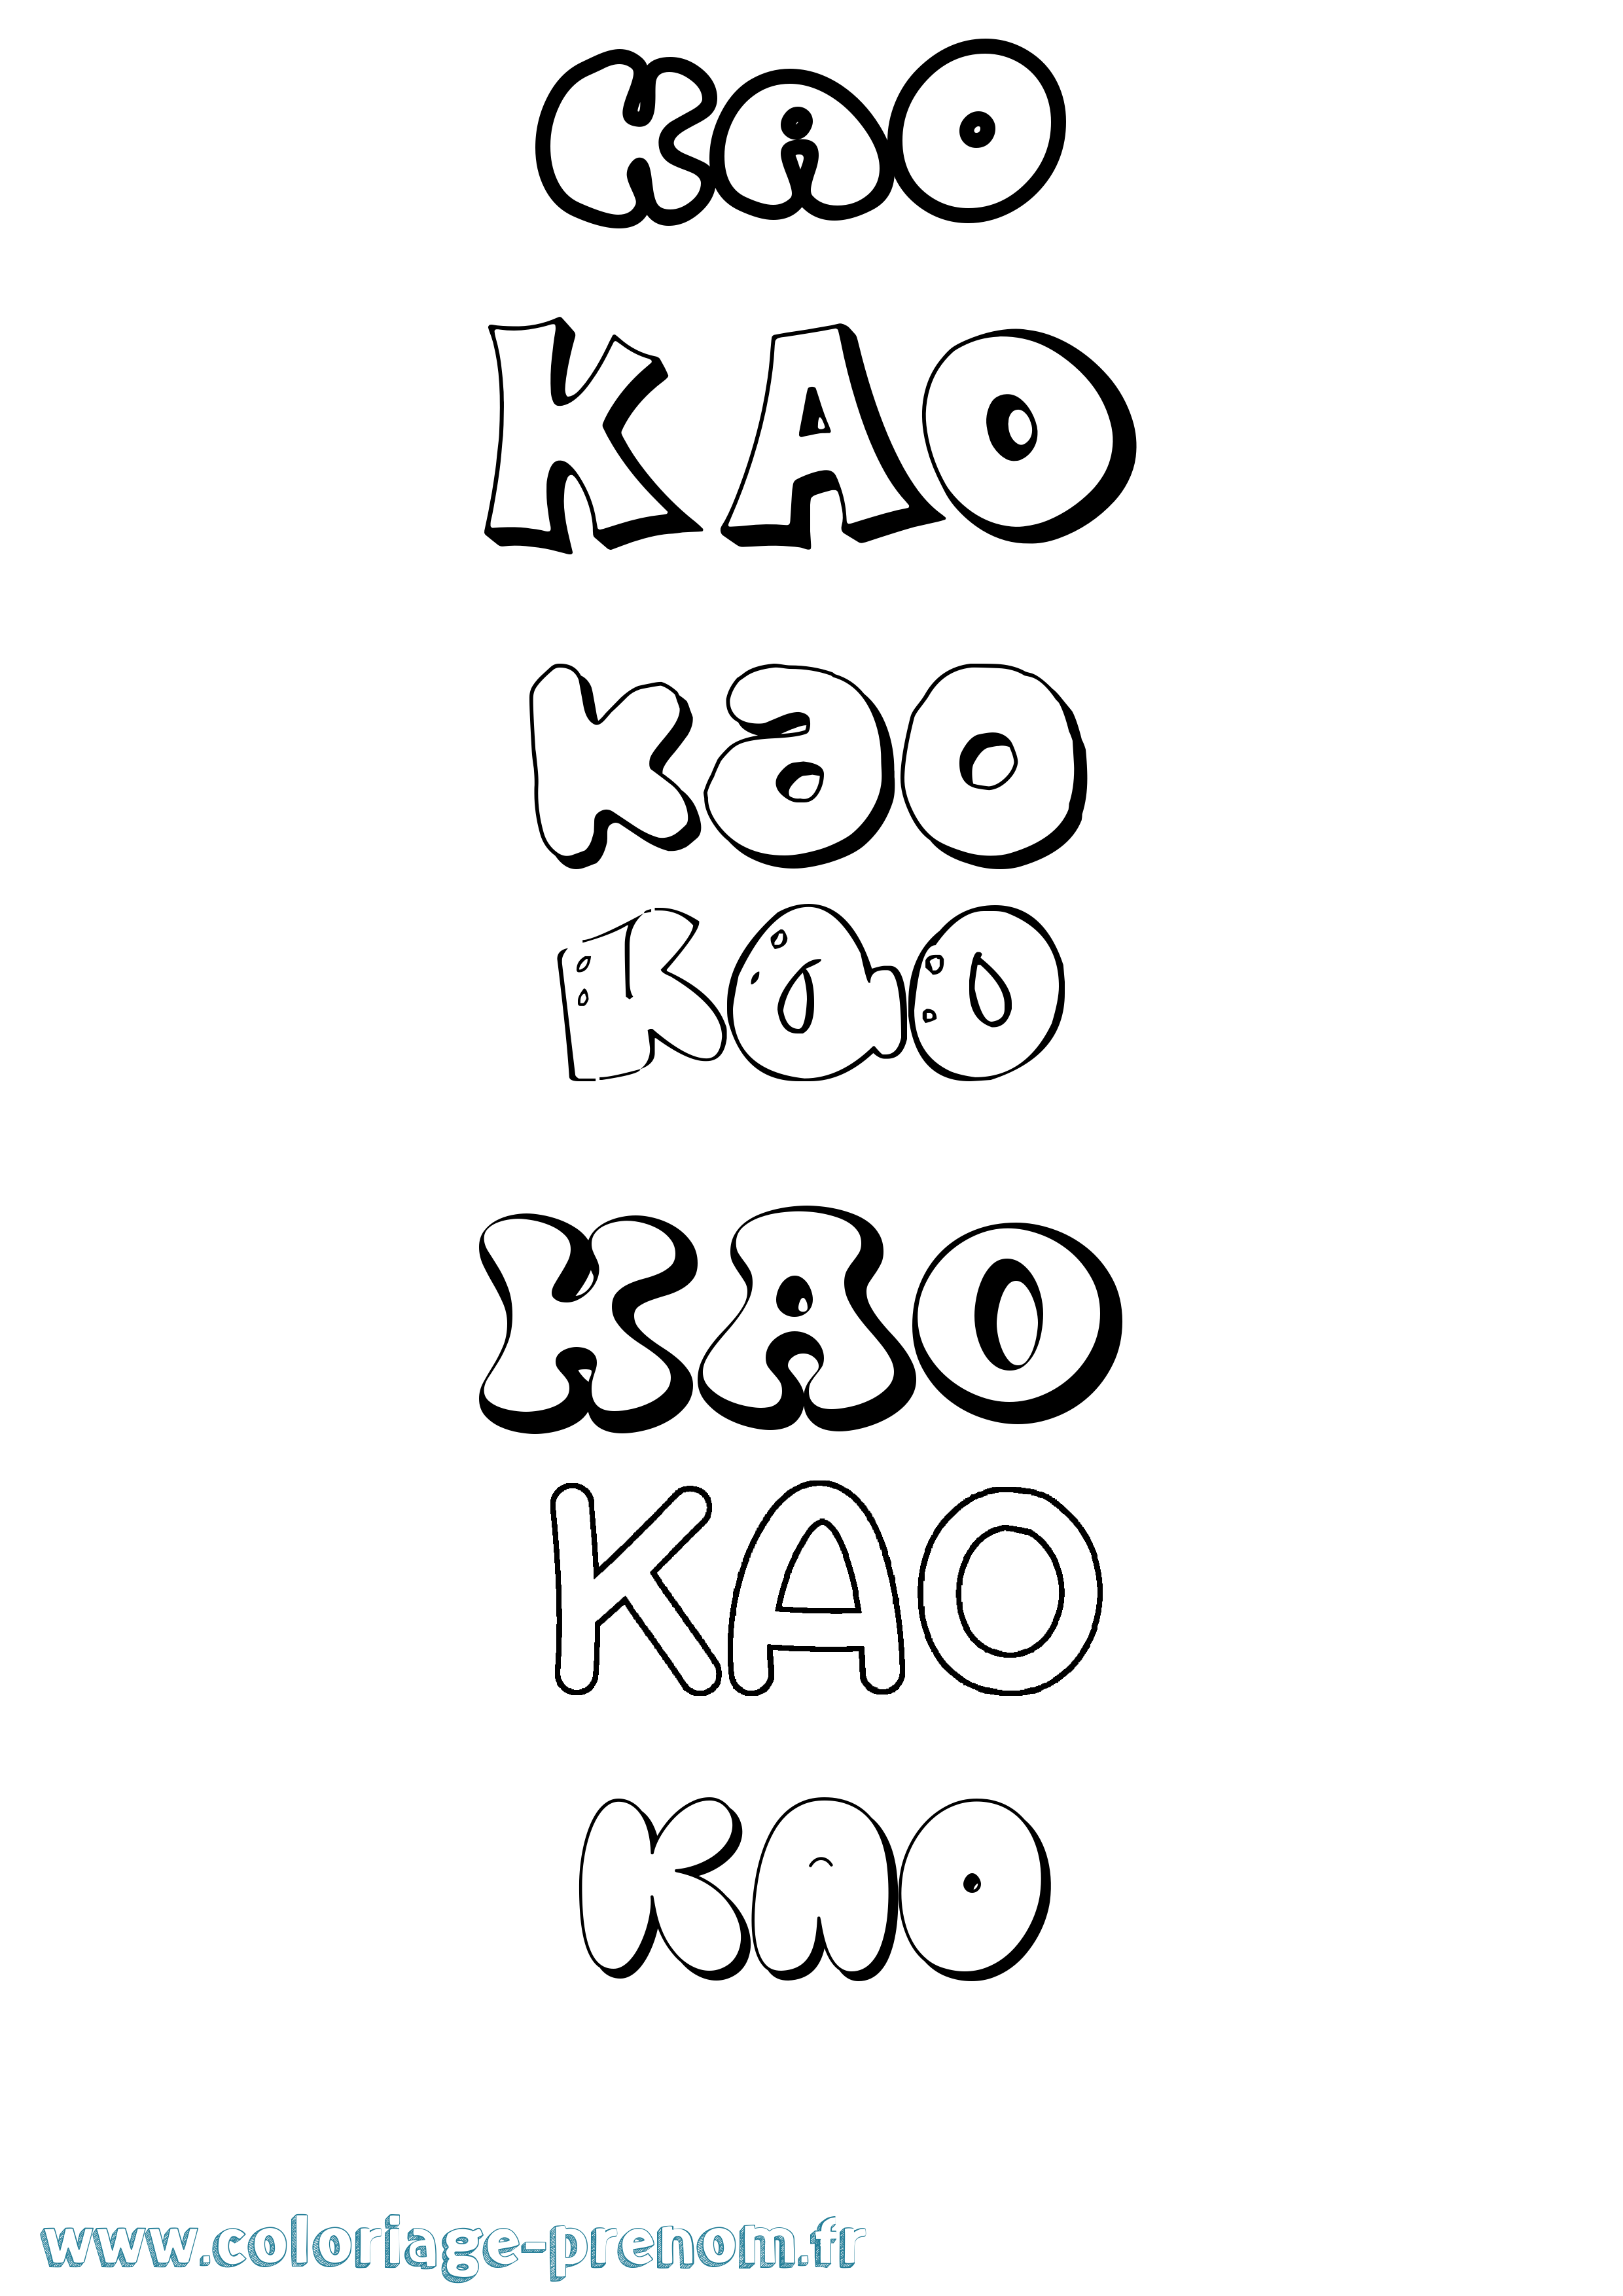  Coloriage  du pr nom Kao  Imprimer ou T l charger facilement